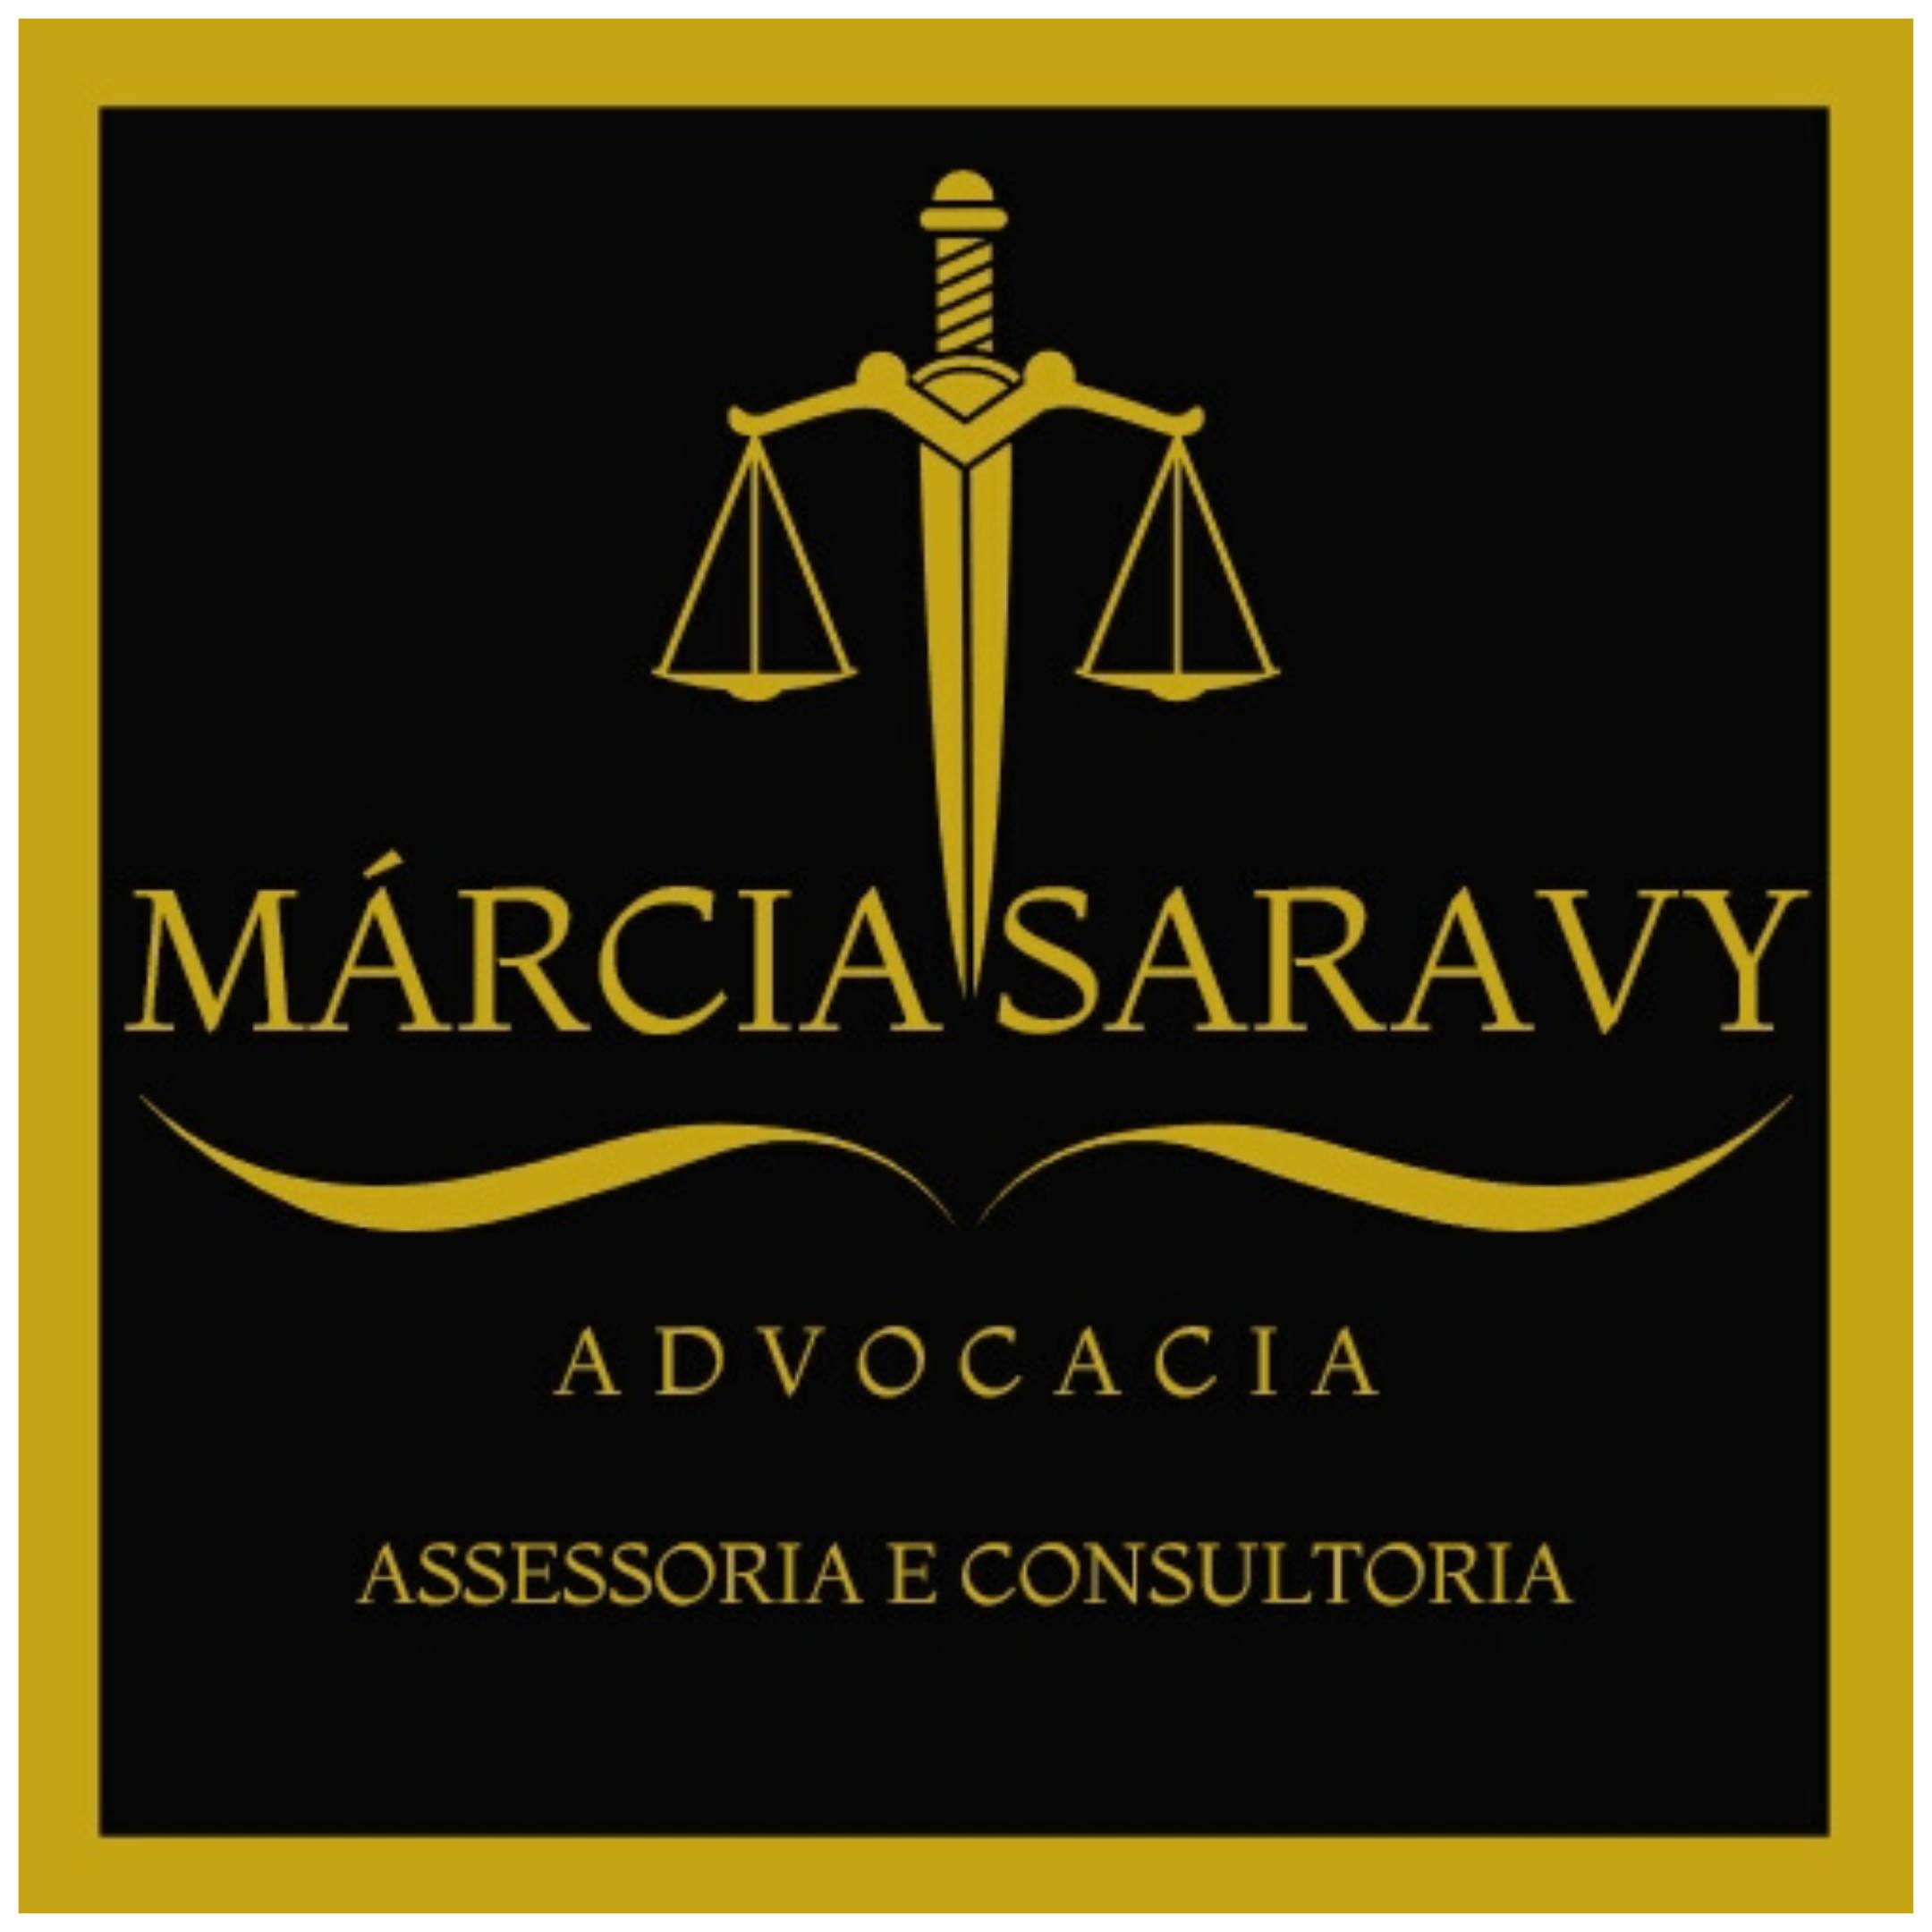 Marcia Saravy Advocacia